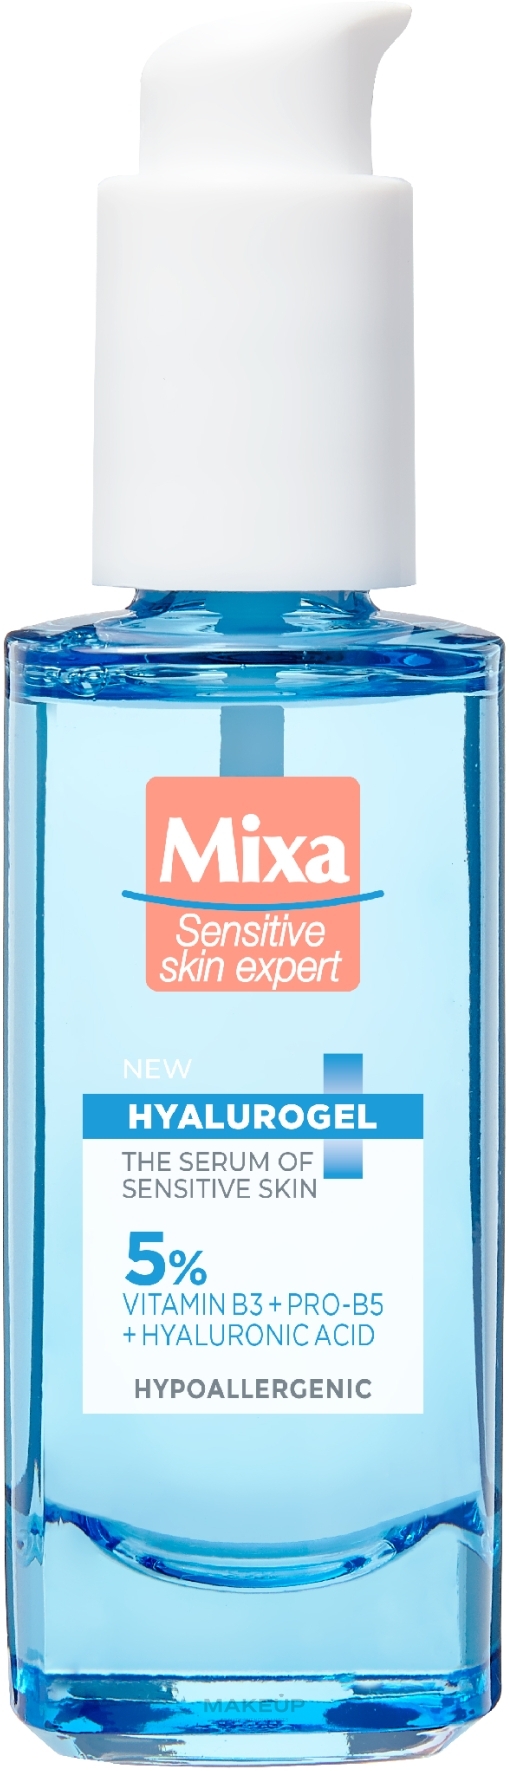 Nawilżające serum do twarzy do skóry wrażliwej, normalnej i suchej - Mixa Hyalurogel The Serum Of Sensitive Skin — Zdjęcie 30 ml